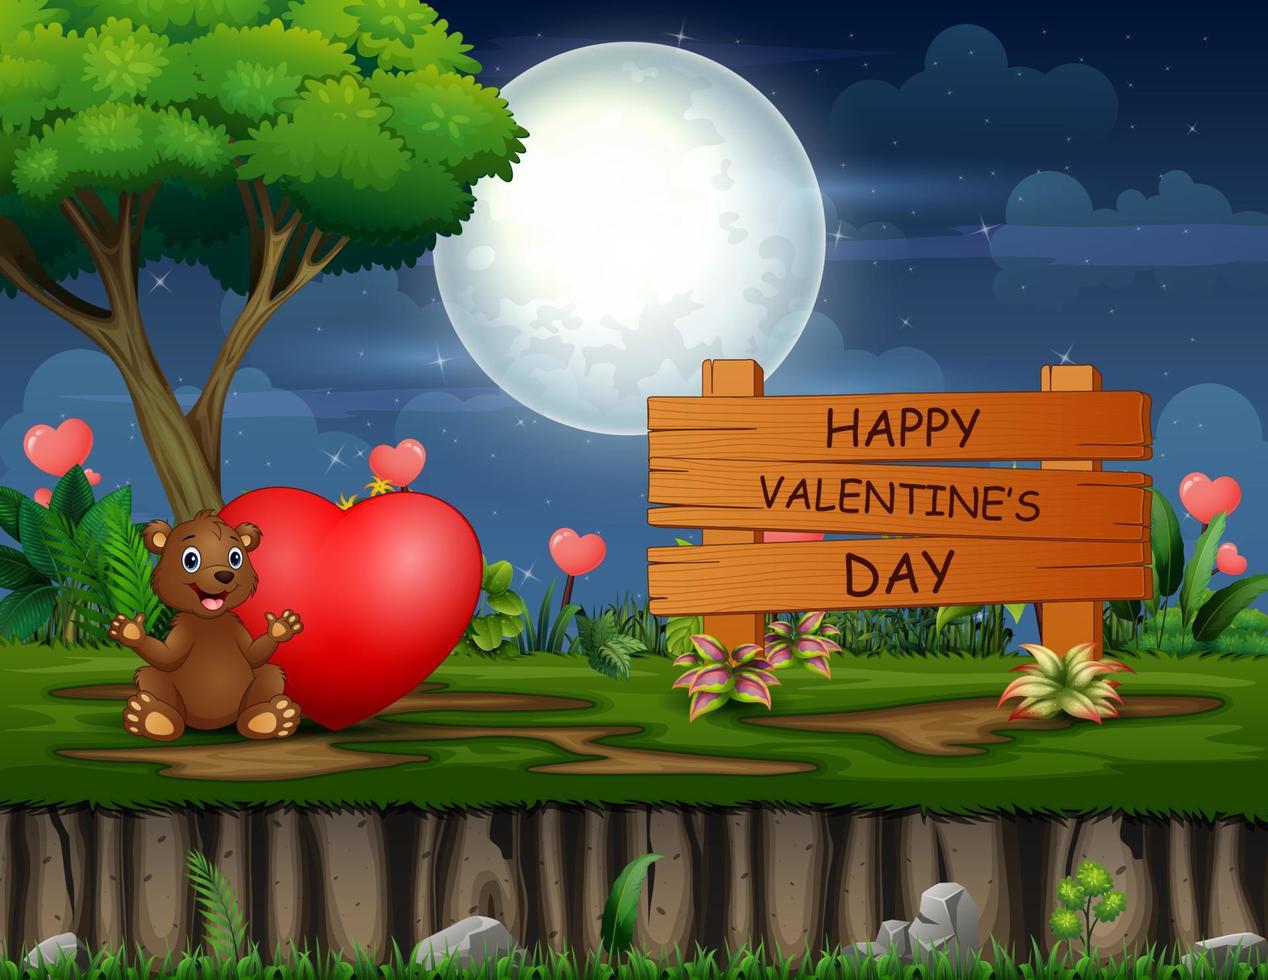 happy valentines day sign avec un ours et un coeur rouge la nuit vecteur